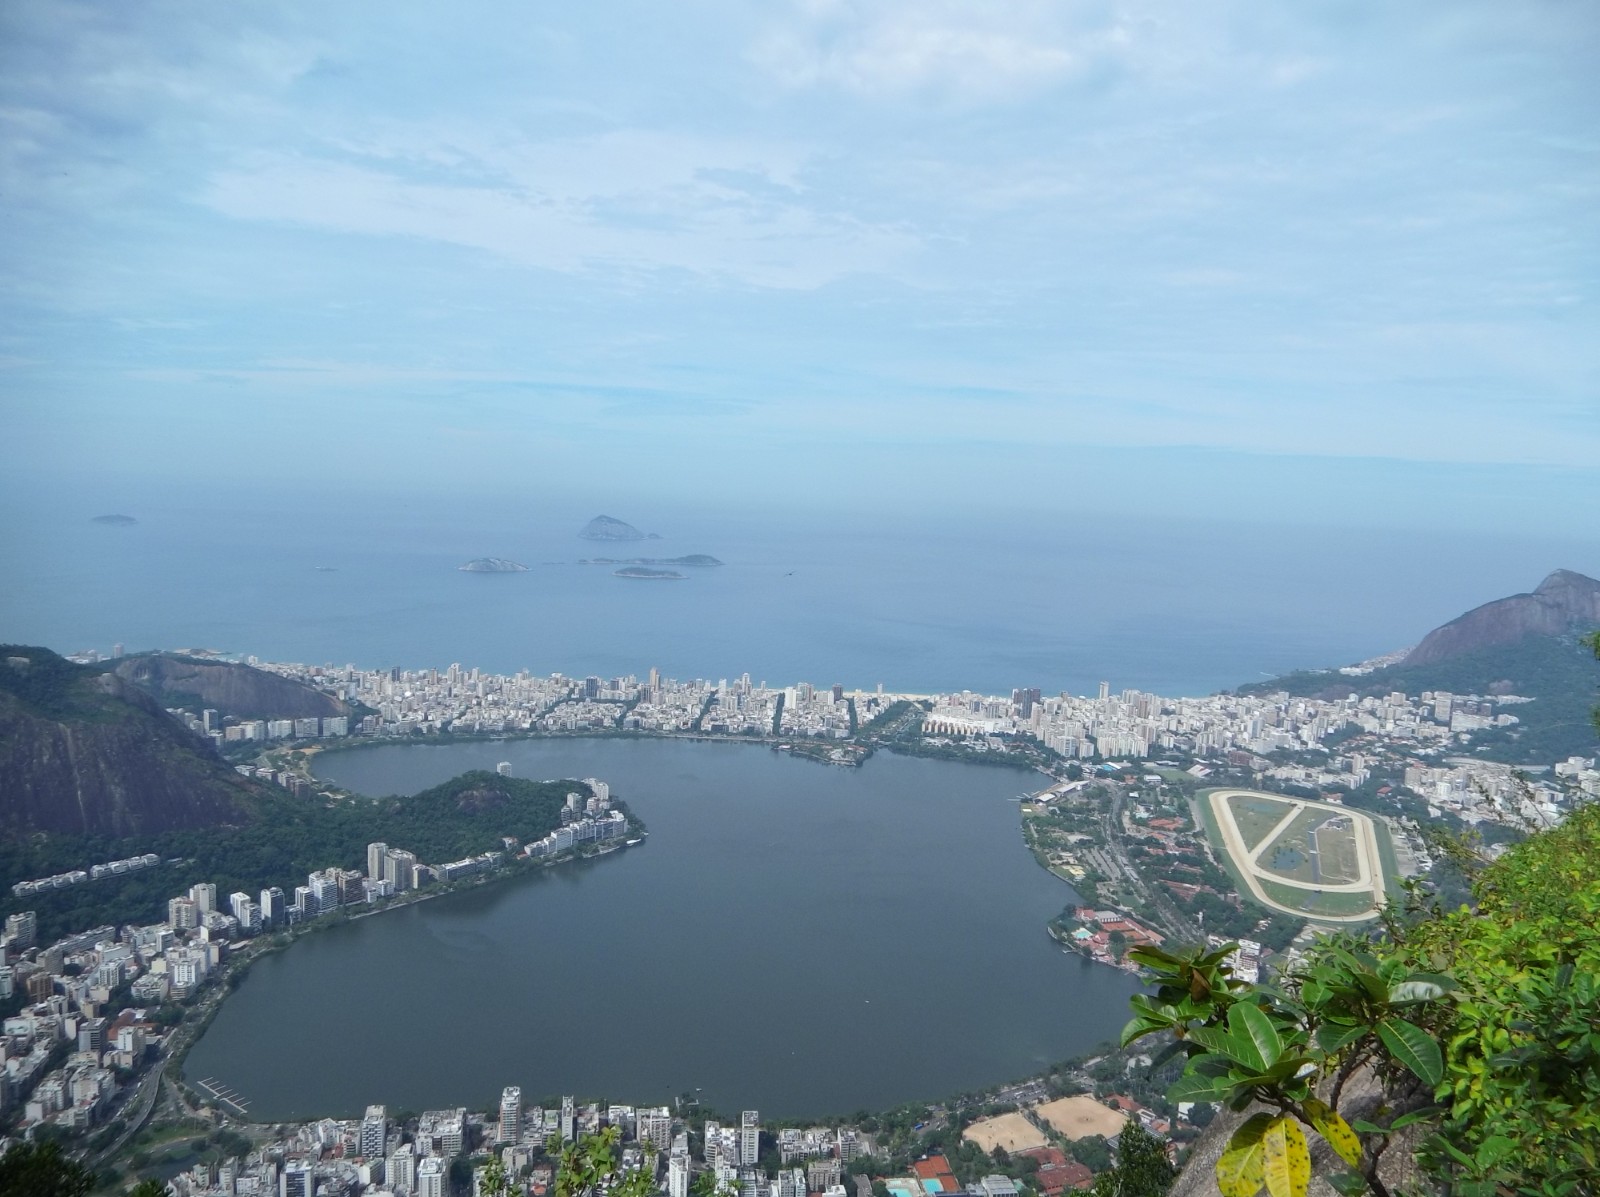 Visita al Cristo redentor en Rio de Janeiro